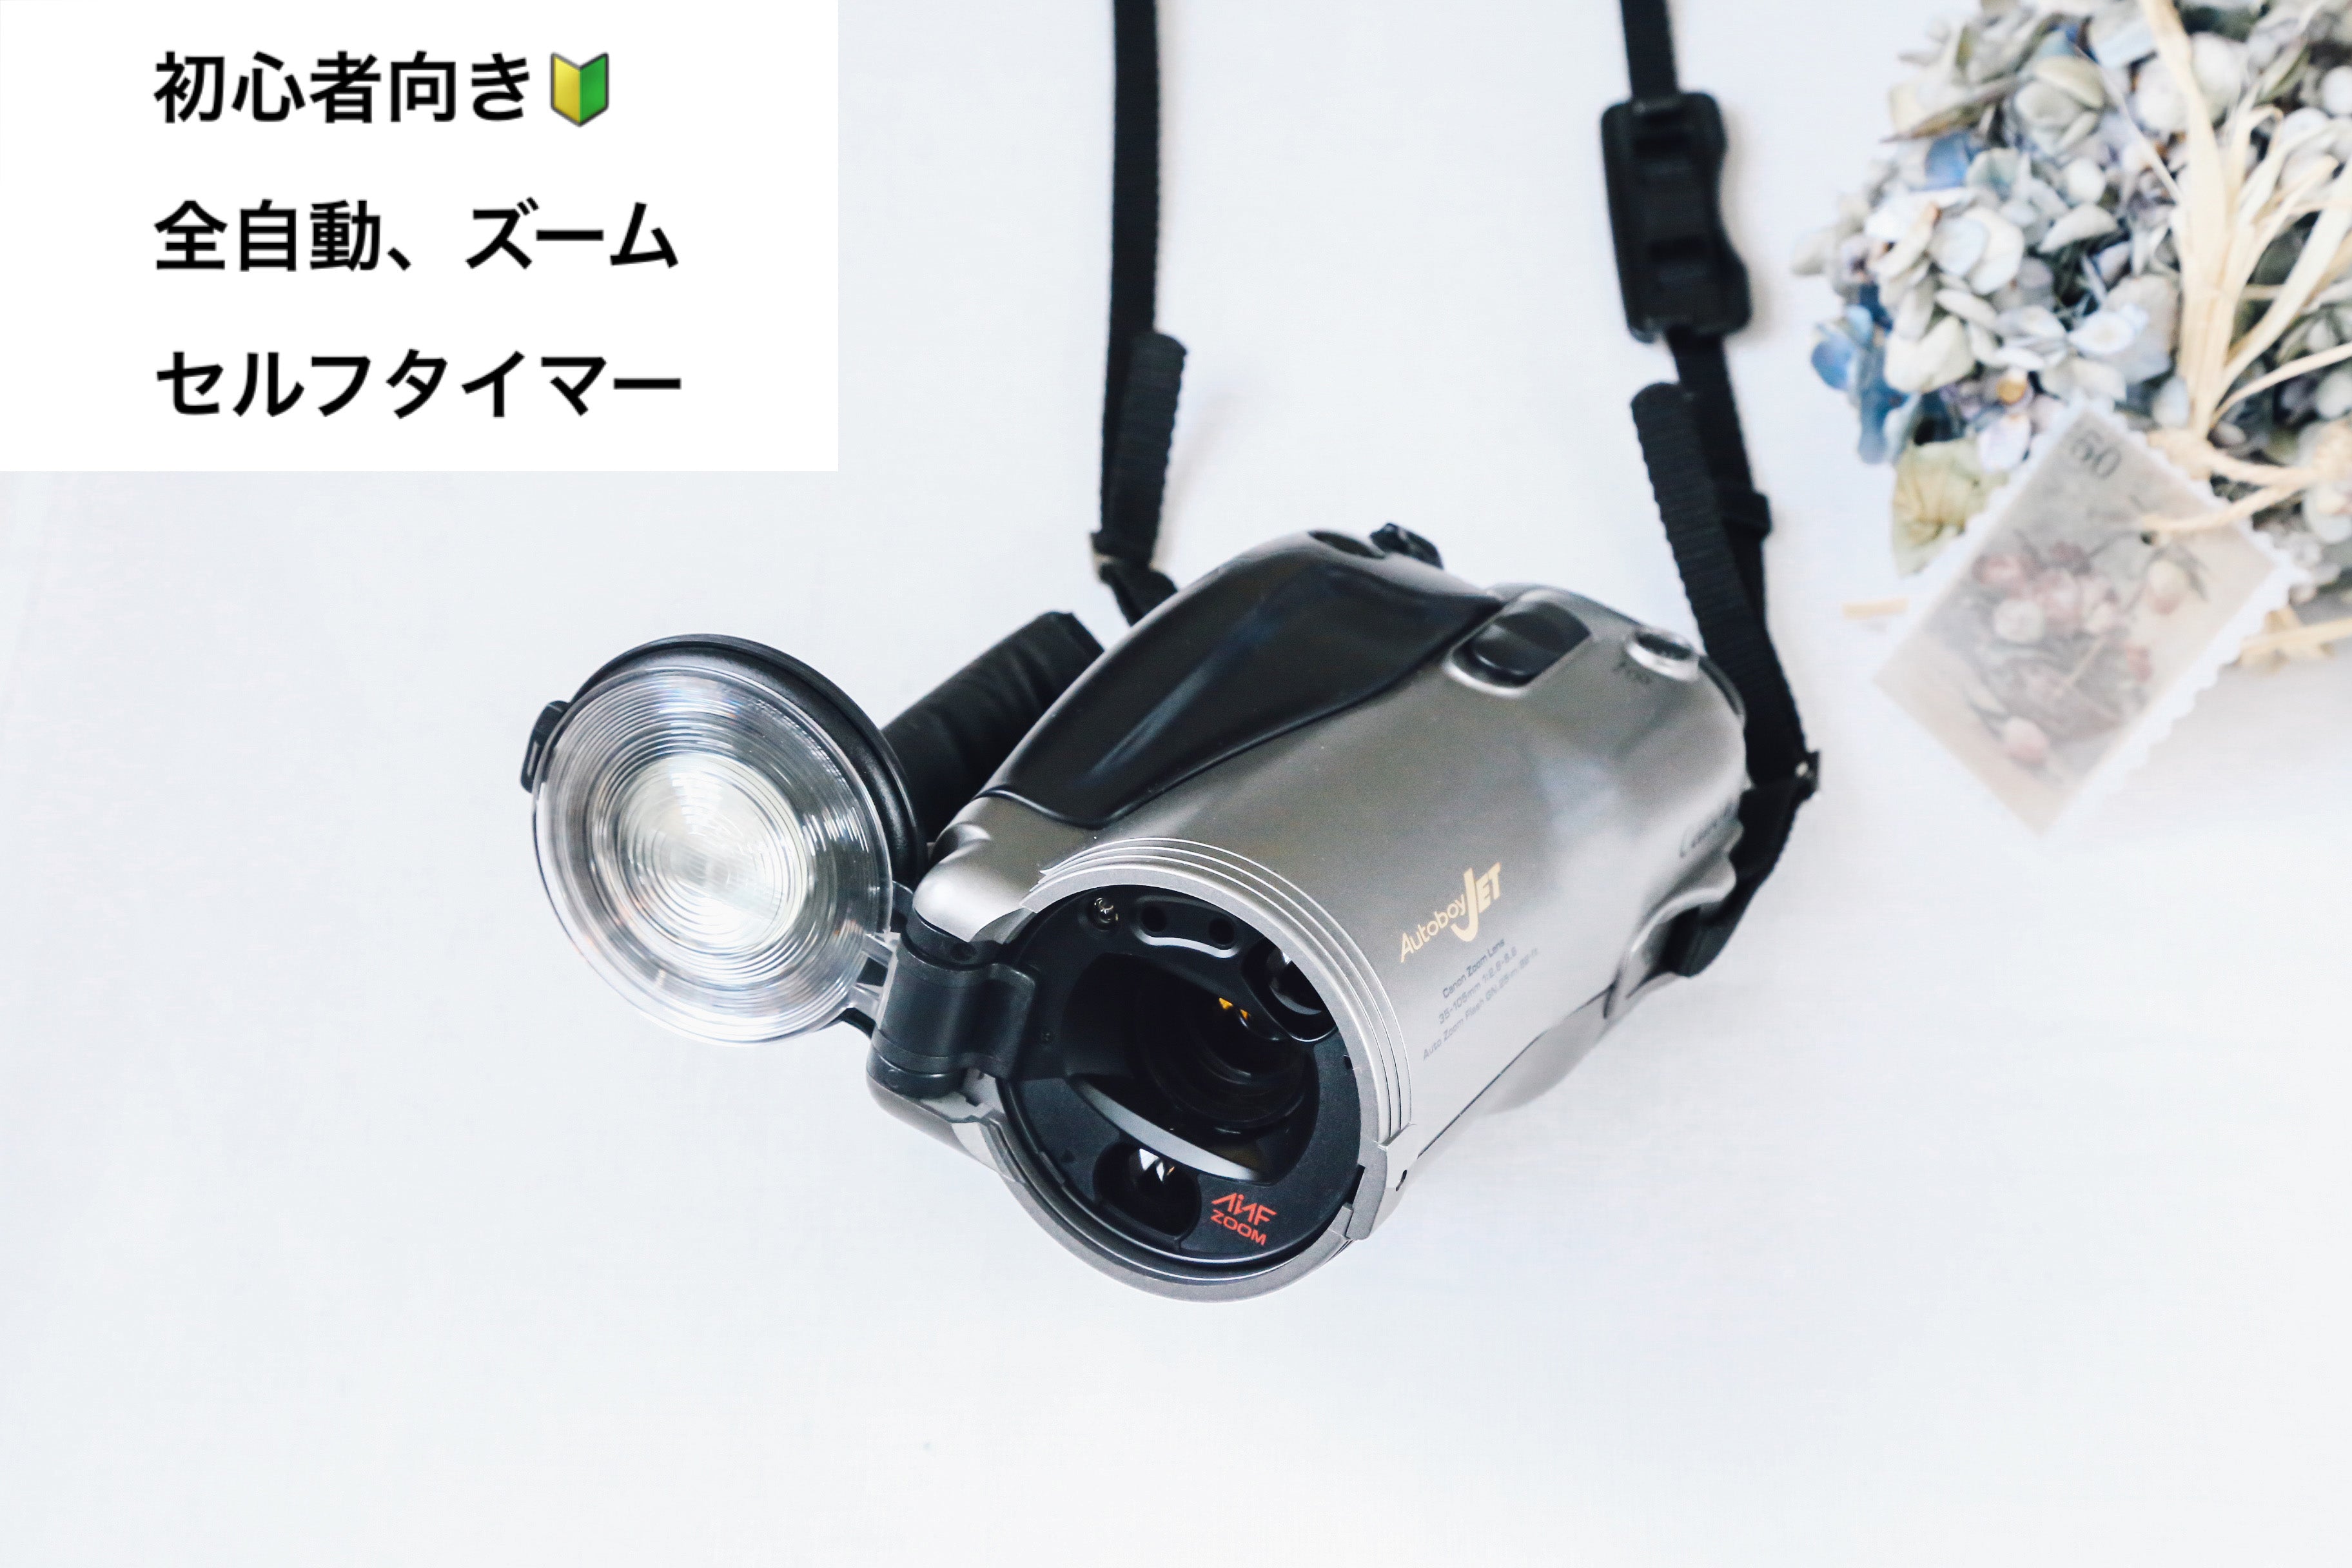 Canon Autoboy JET【完動品】状態◎ 貴重な限定ケース付き❗️ – Ein